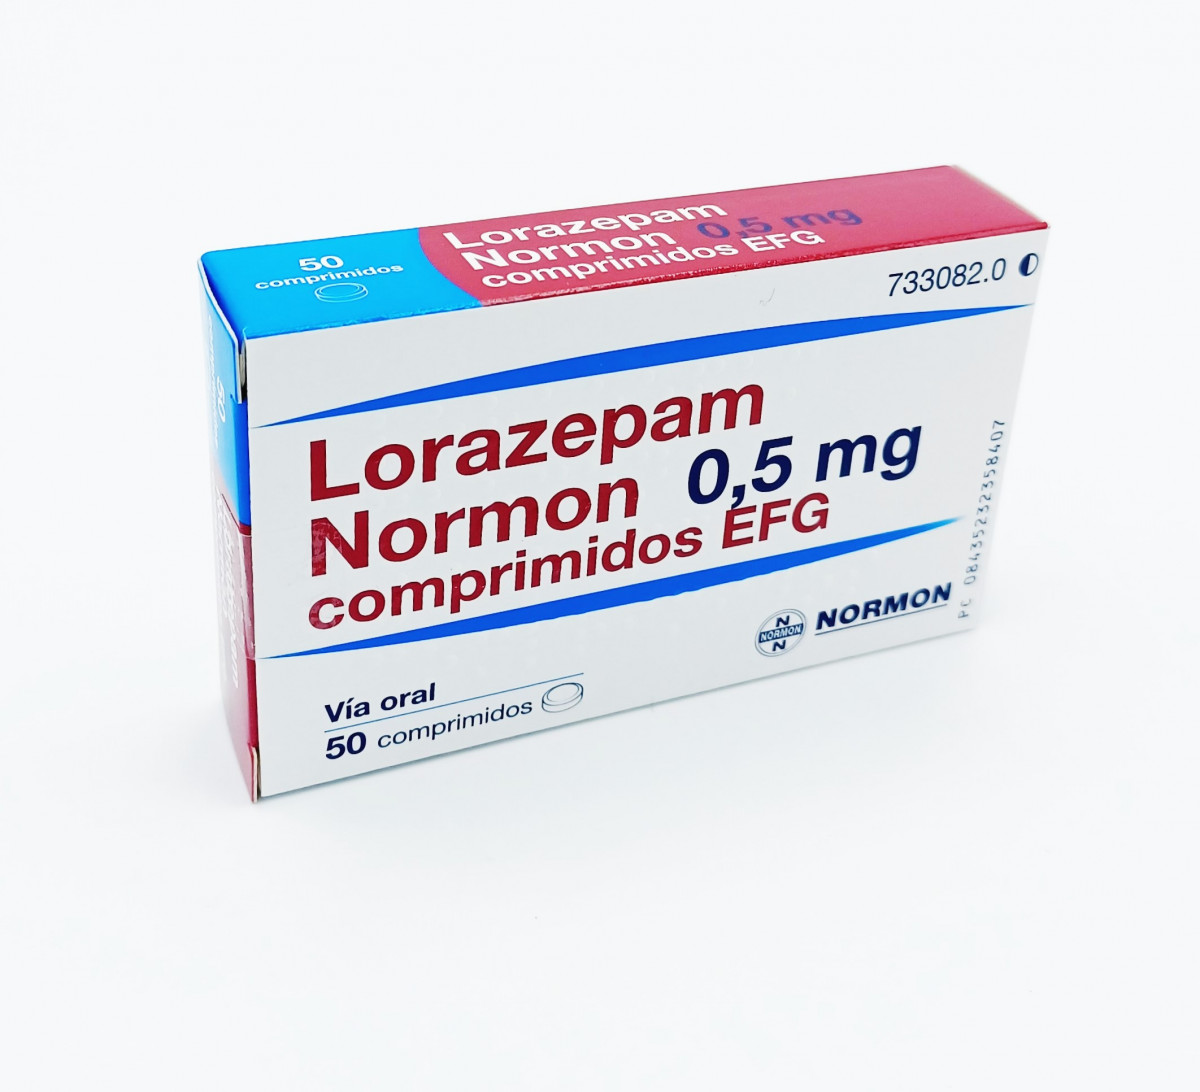 LORAZEPAM NORMON 0,5 MG COMPRIMIDOS EFG, 50 comprimidos (Al/PVC/ACLAR) fotografía del envase.